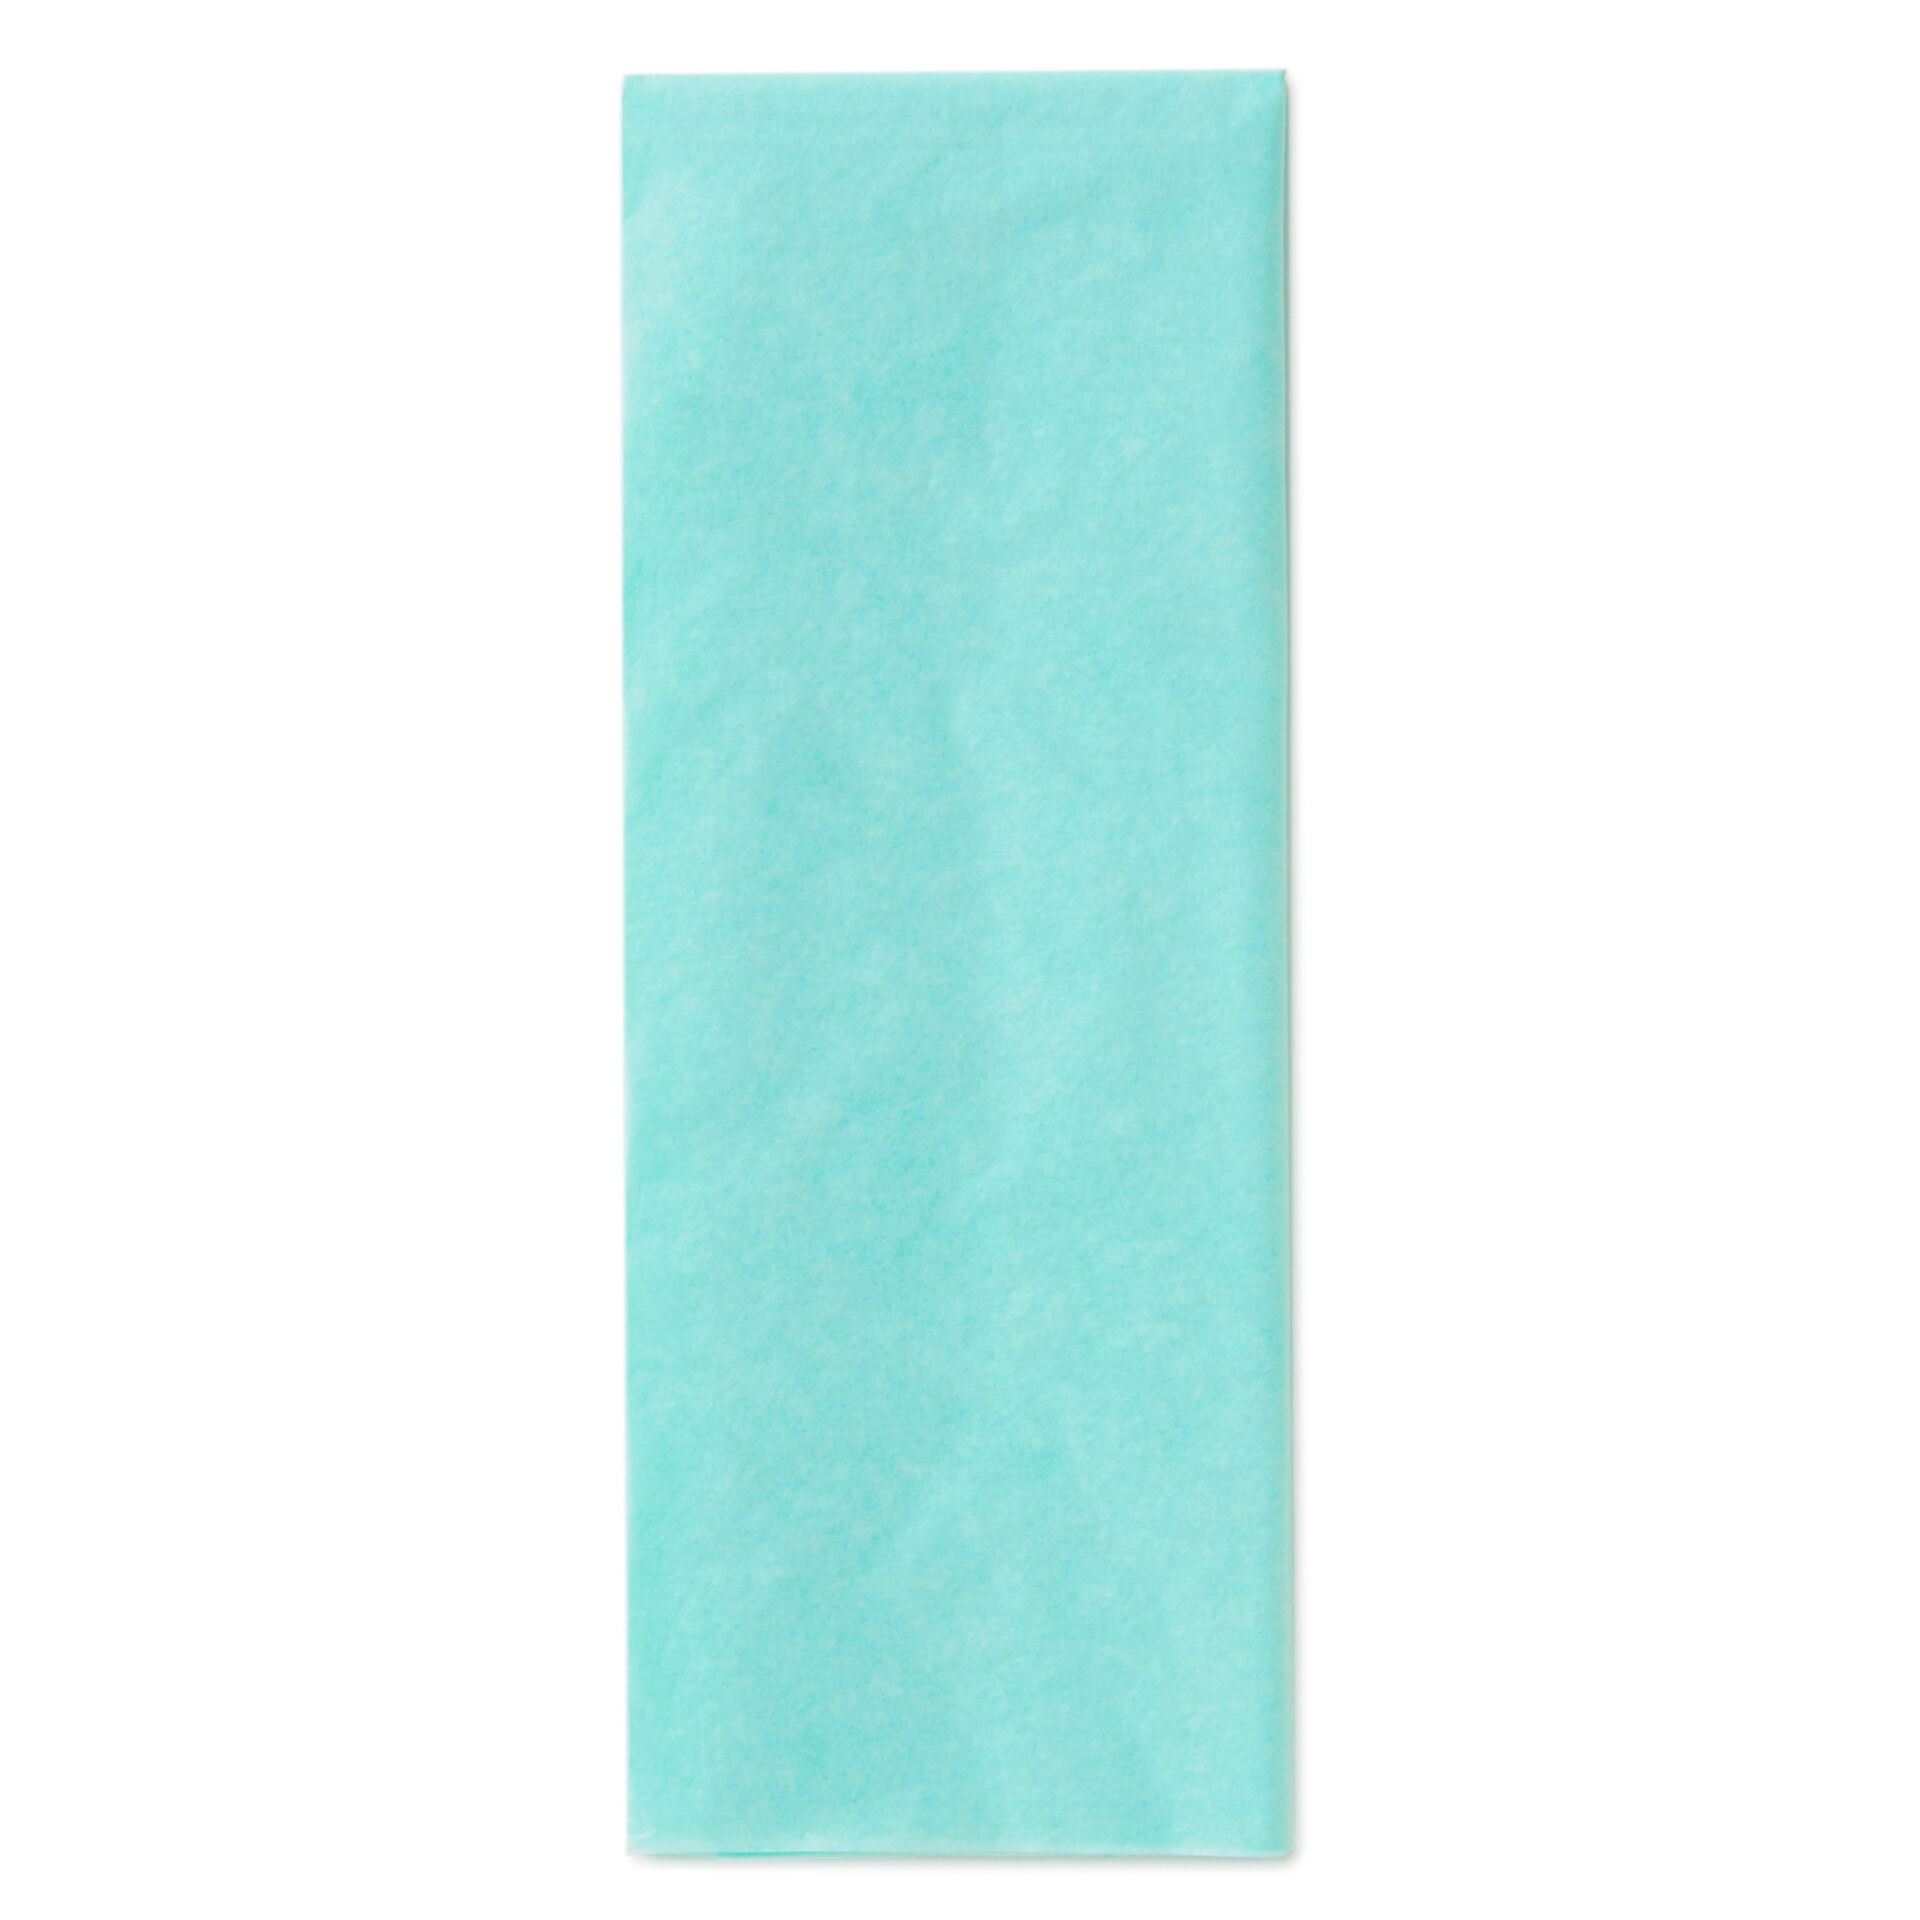 AQUA Tissue Paper ~ 24 Sheets ~ Premium Tissue Great Price!